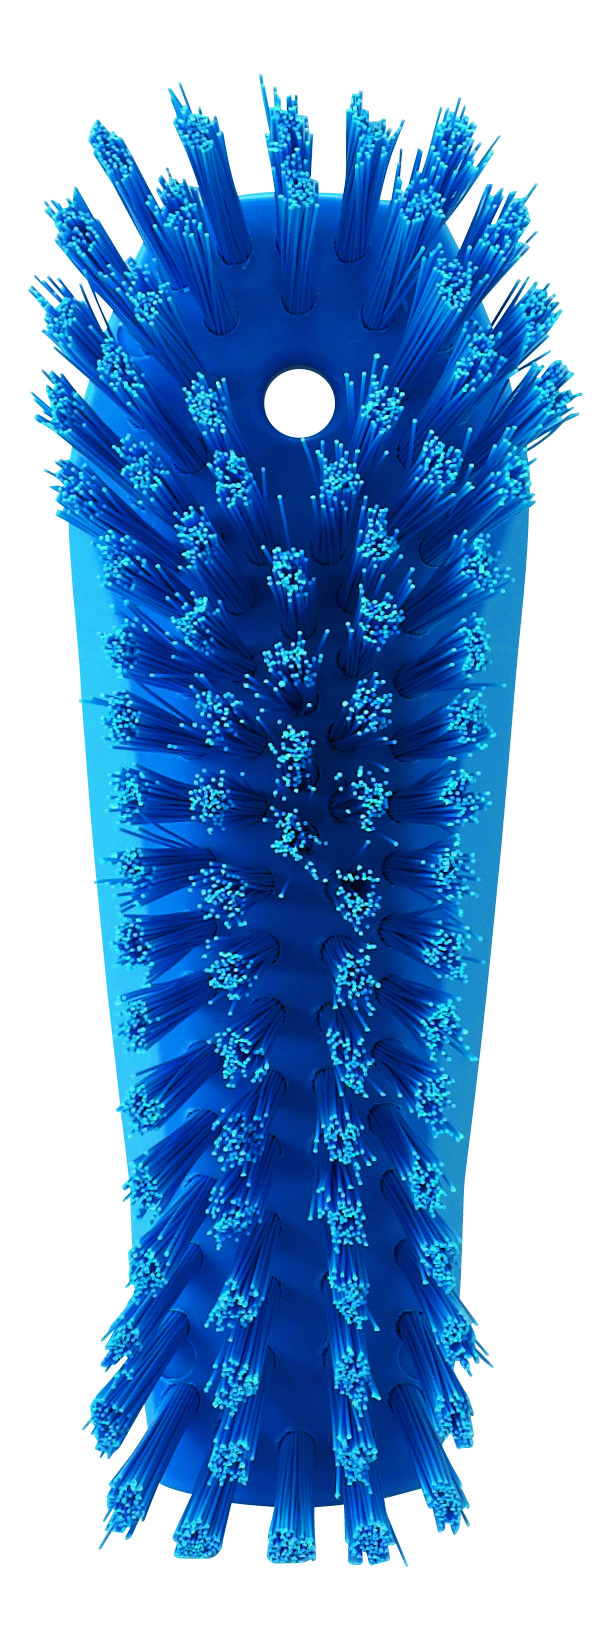 Щетка Vikan для мытья разделочных досок и рабочих поверхностей, жесткая, 200 мм, синяя